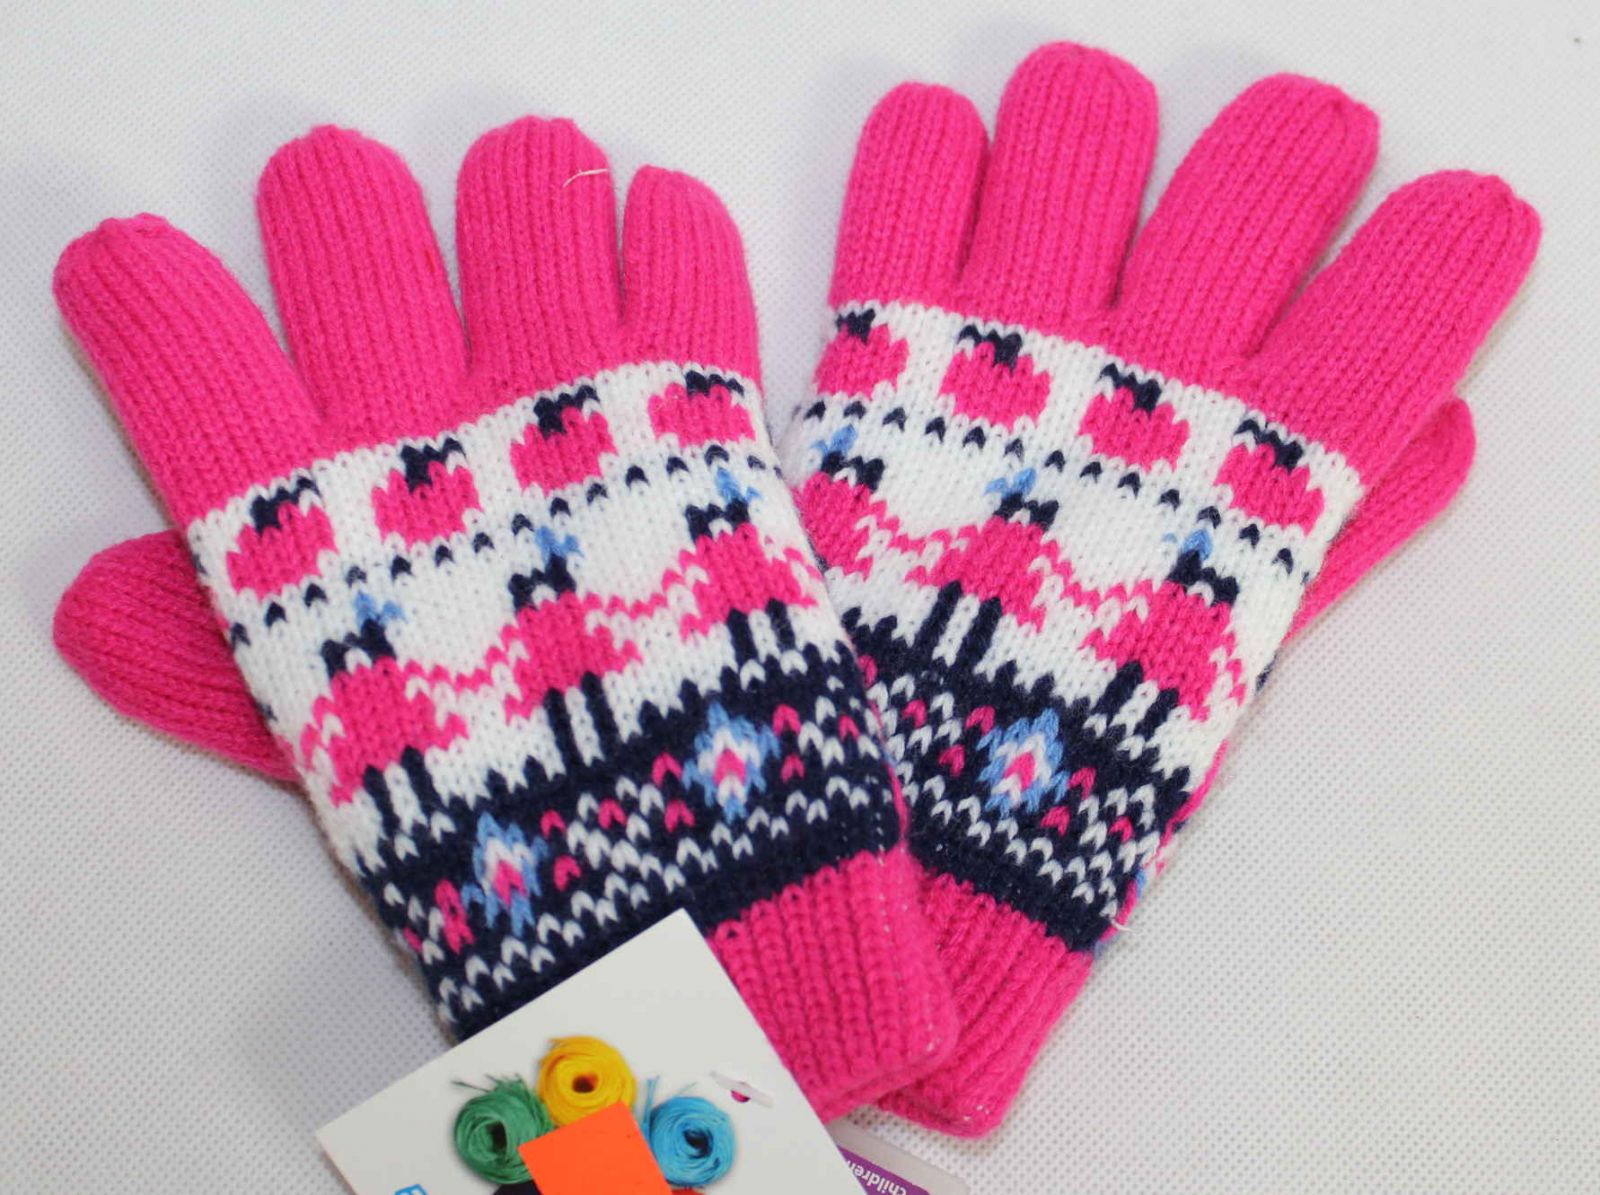 Dětské prstové rukavice, růžové prstové rukavice, úpletové rukavice, pletené rukavice, dívčí prstové rukavice, teplé rukavice, chlapecké prstové rukavice